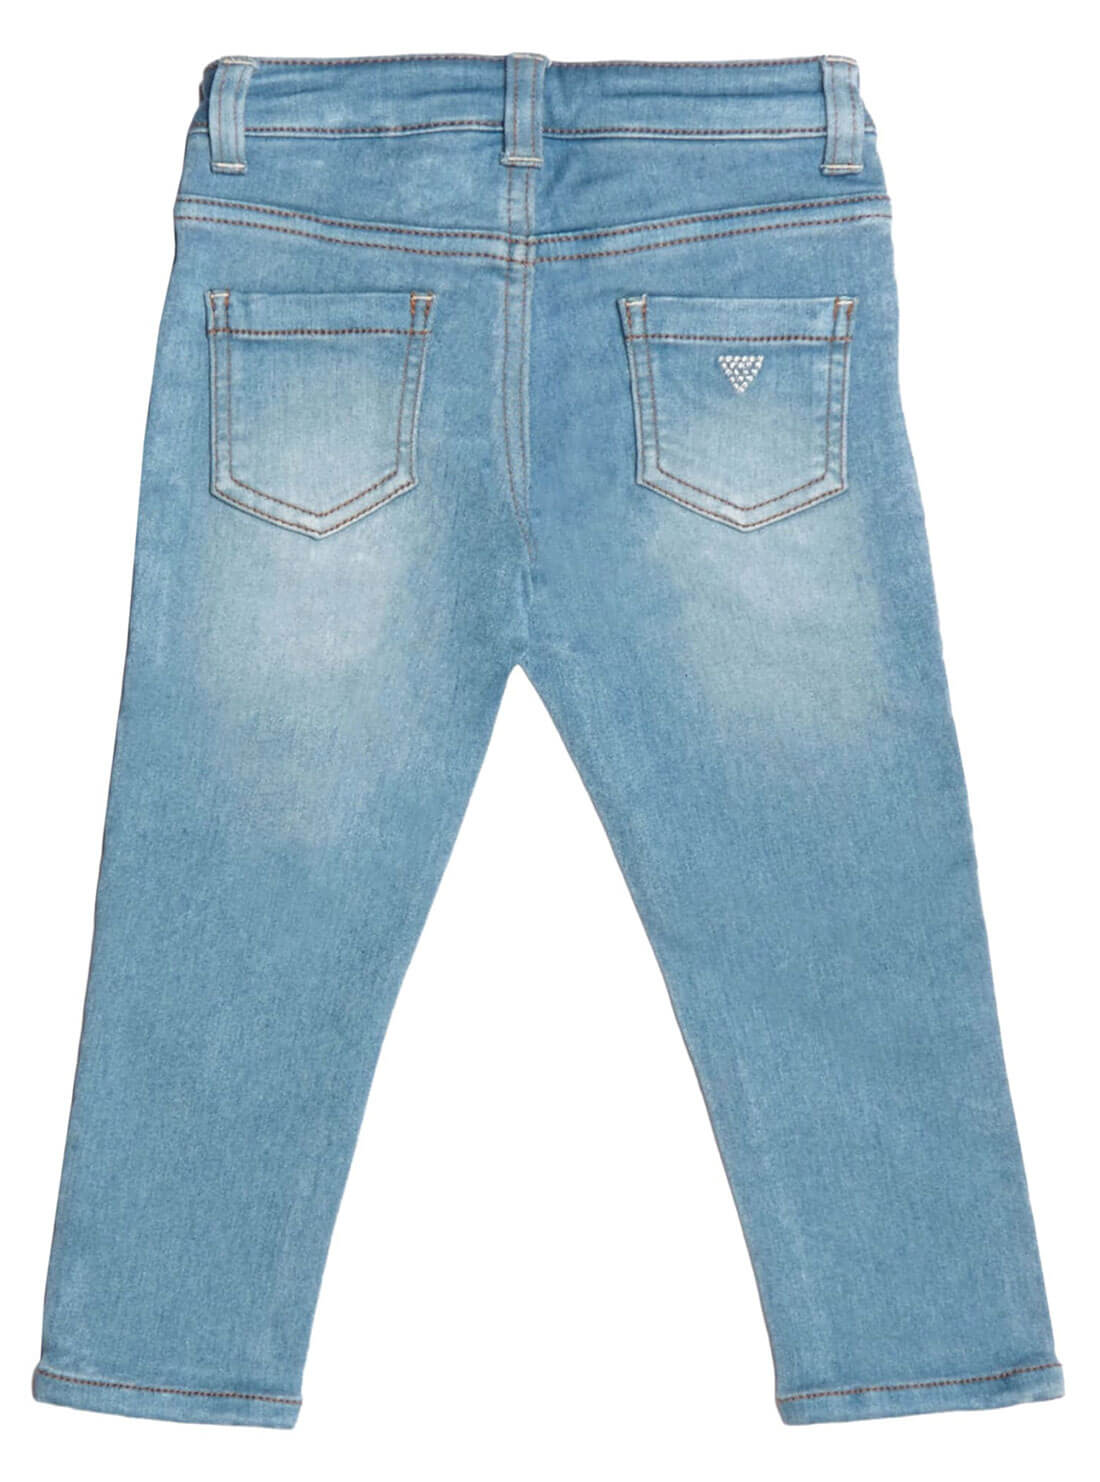 Skinny Denim Jeans in Light Wash (2-7)